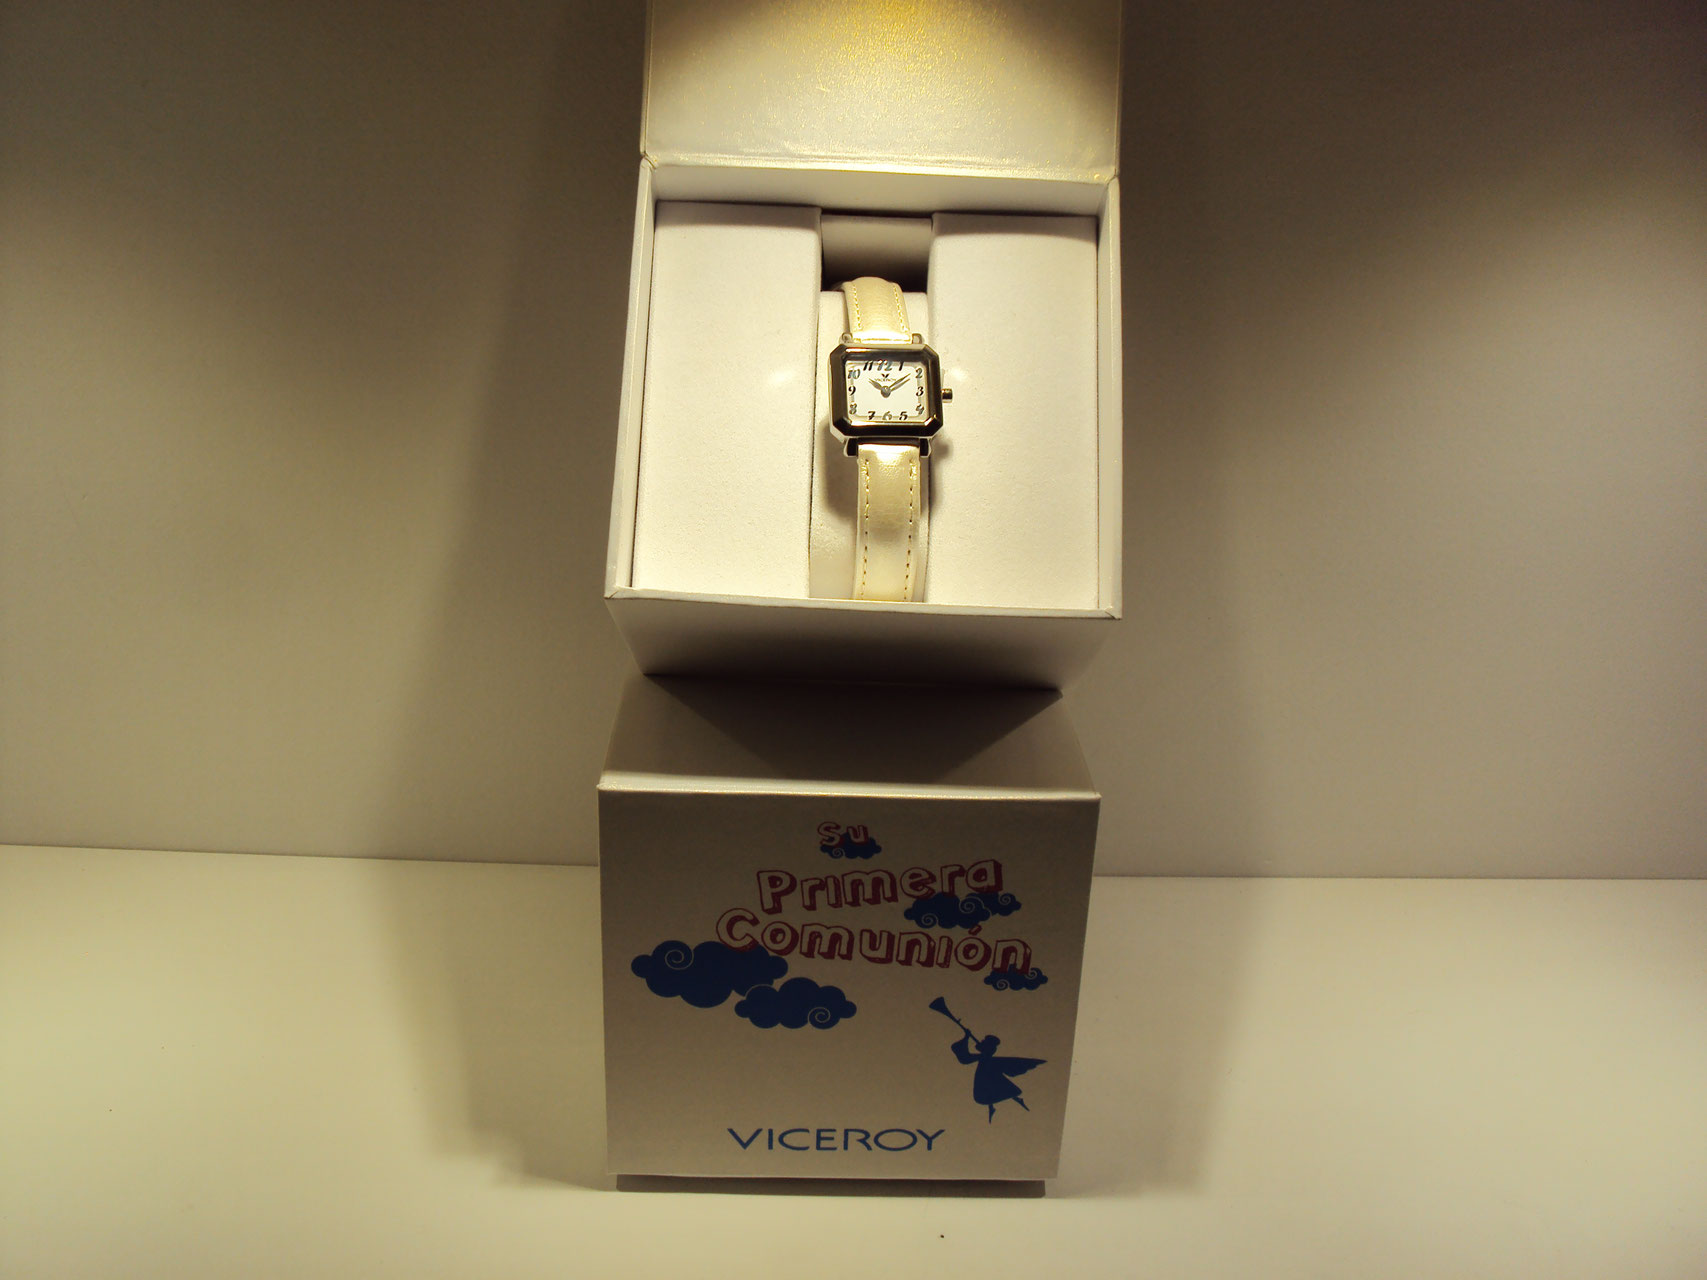 Reloj de acero cuadrado Viceroy con correa de color marfil.59€